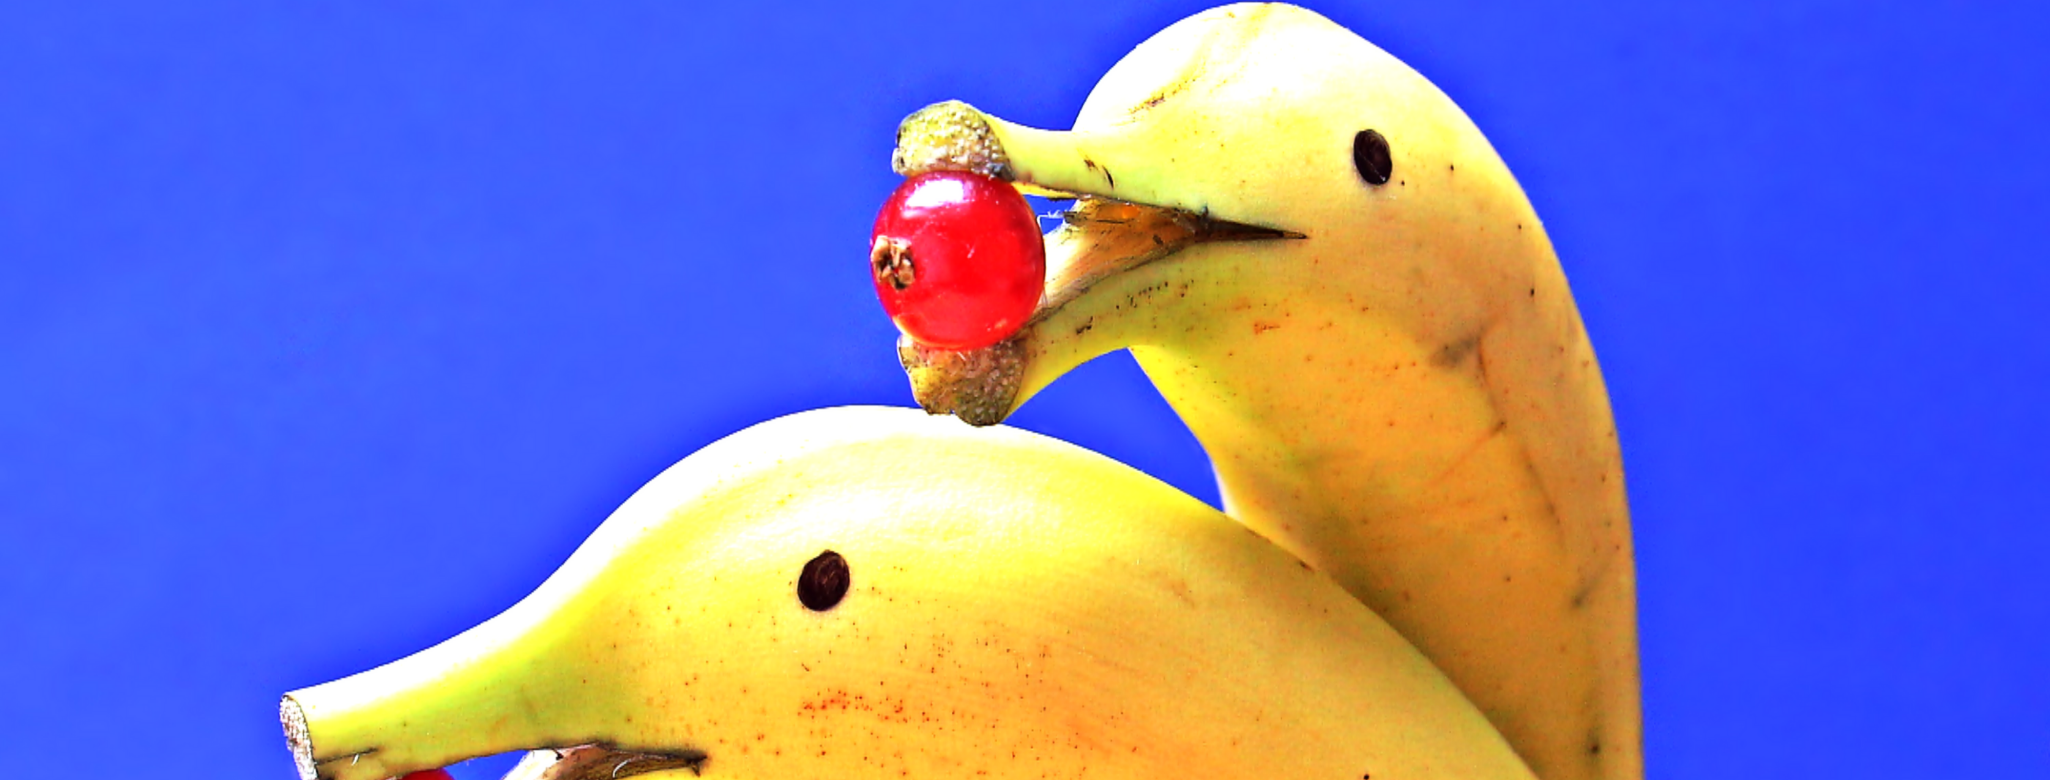 Kunst Bananen